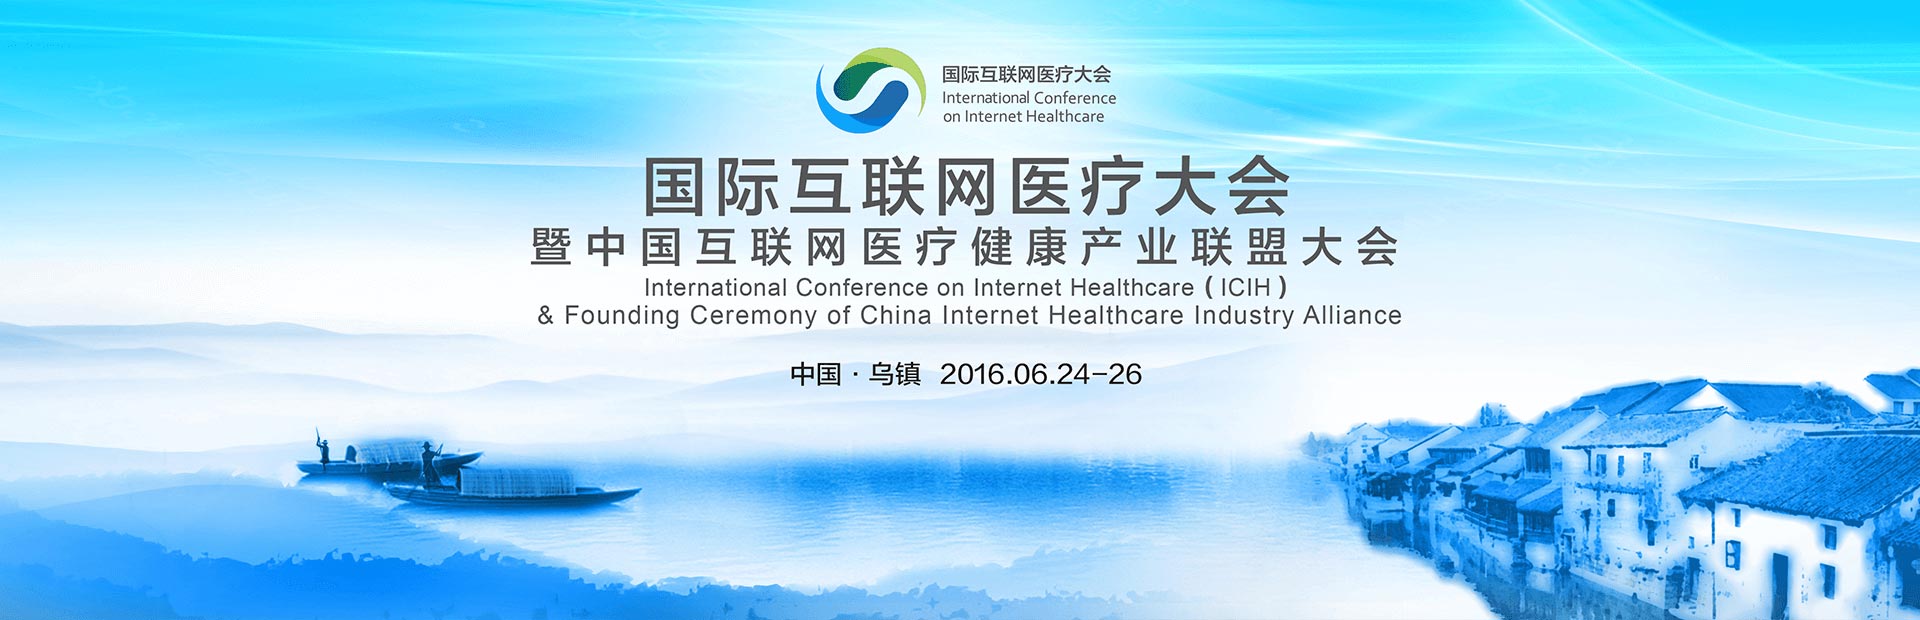 首届国际互联网医疗大会